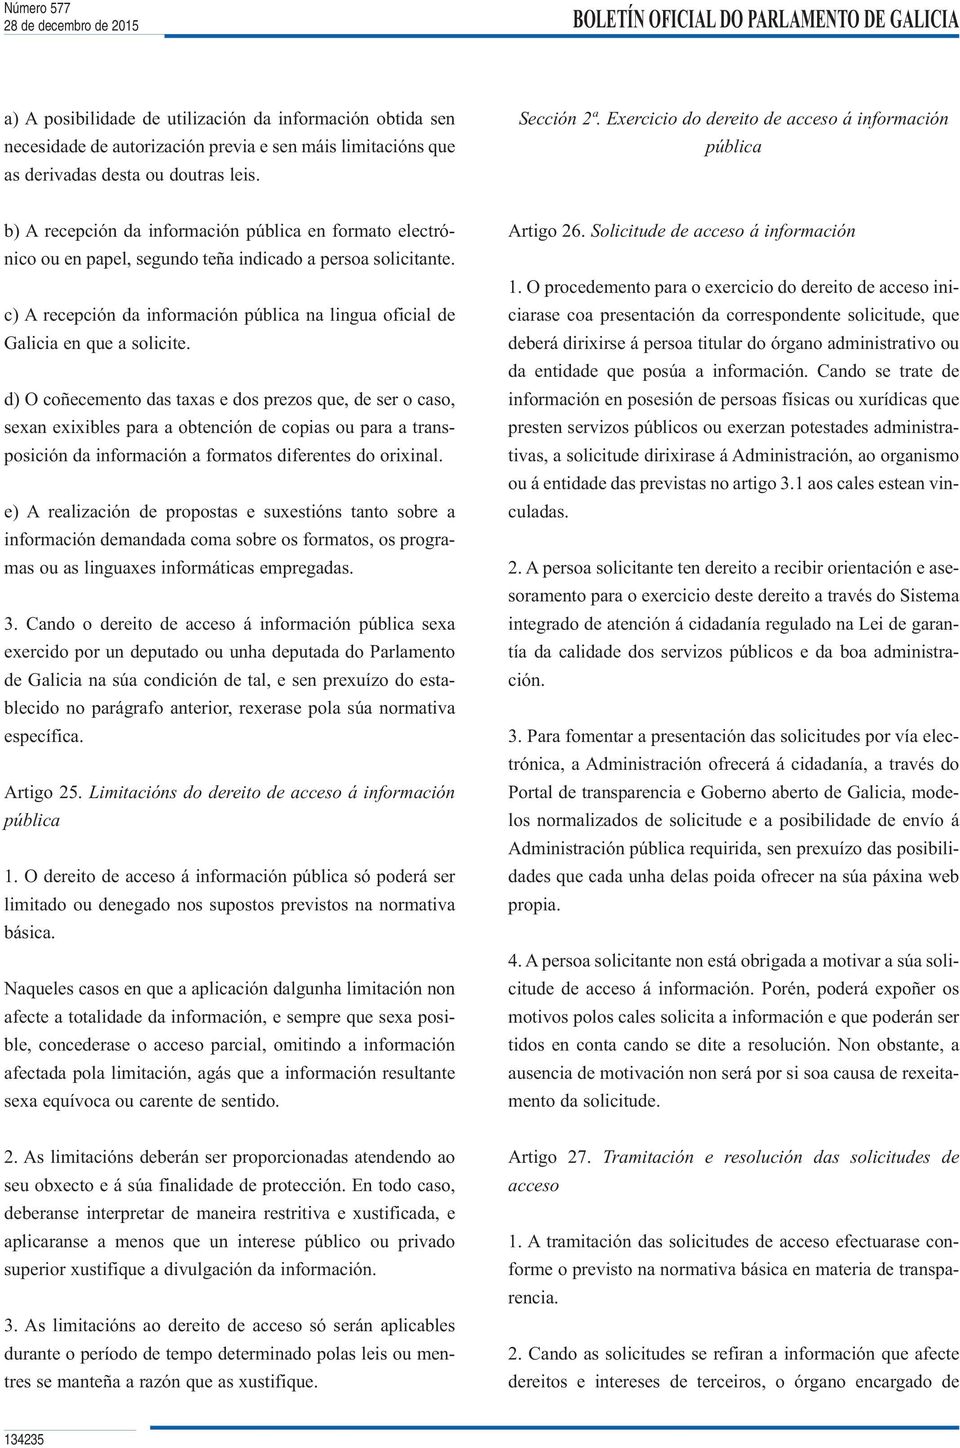 c) A recepción da información pública na lingua oficial de Galicia en que a solicite.